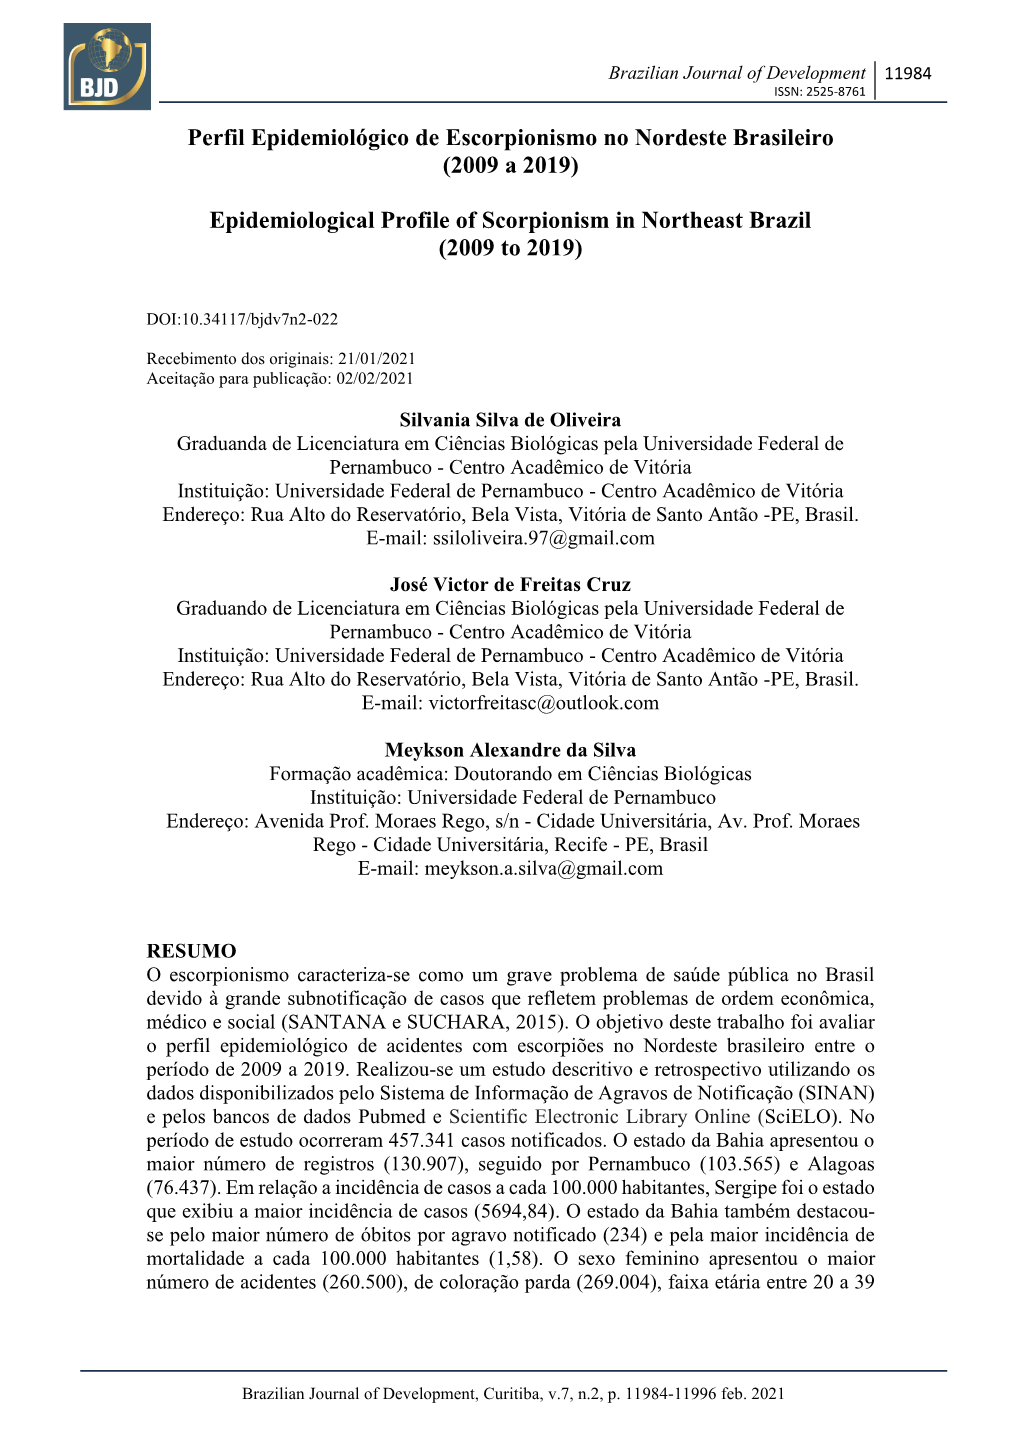 Perfil Epidemiológico De Escorpionismo No Nordeste Brasileiro (2009 a 2019)